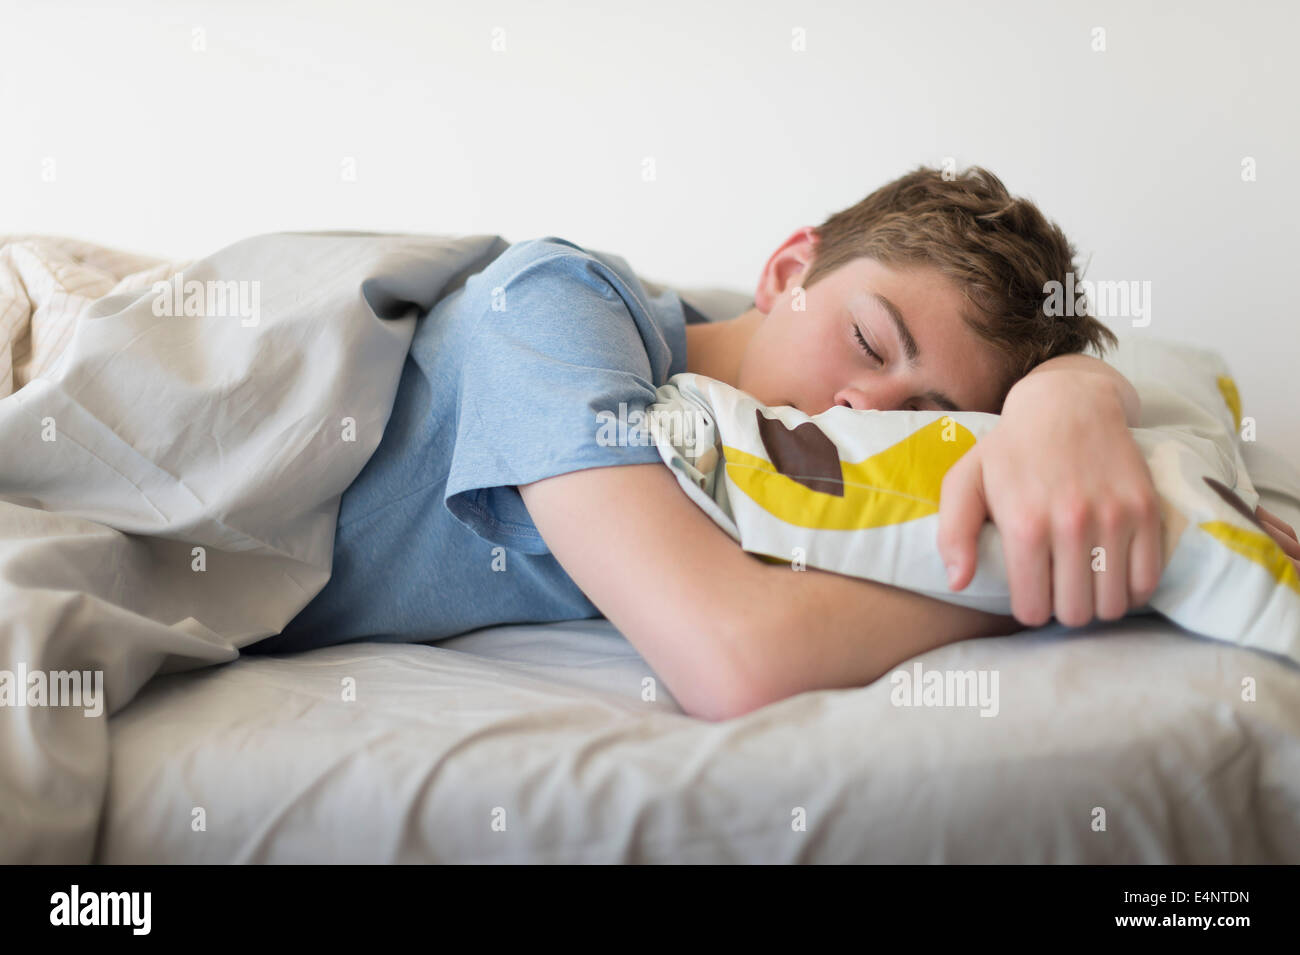 Movies Of Sleeping Sleepin Teen 12